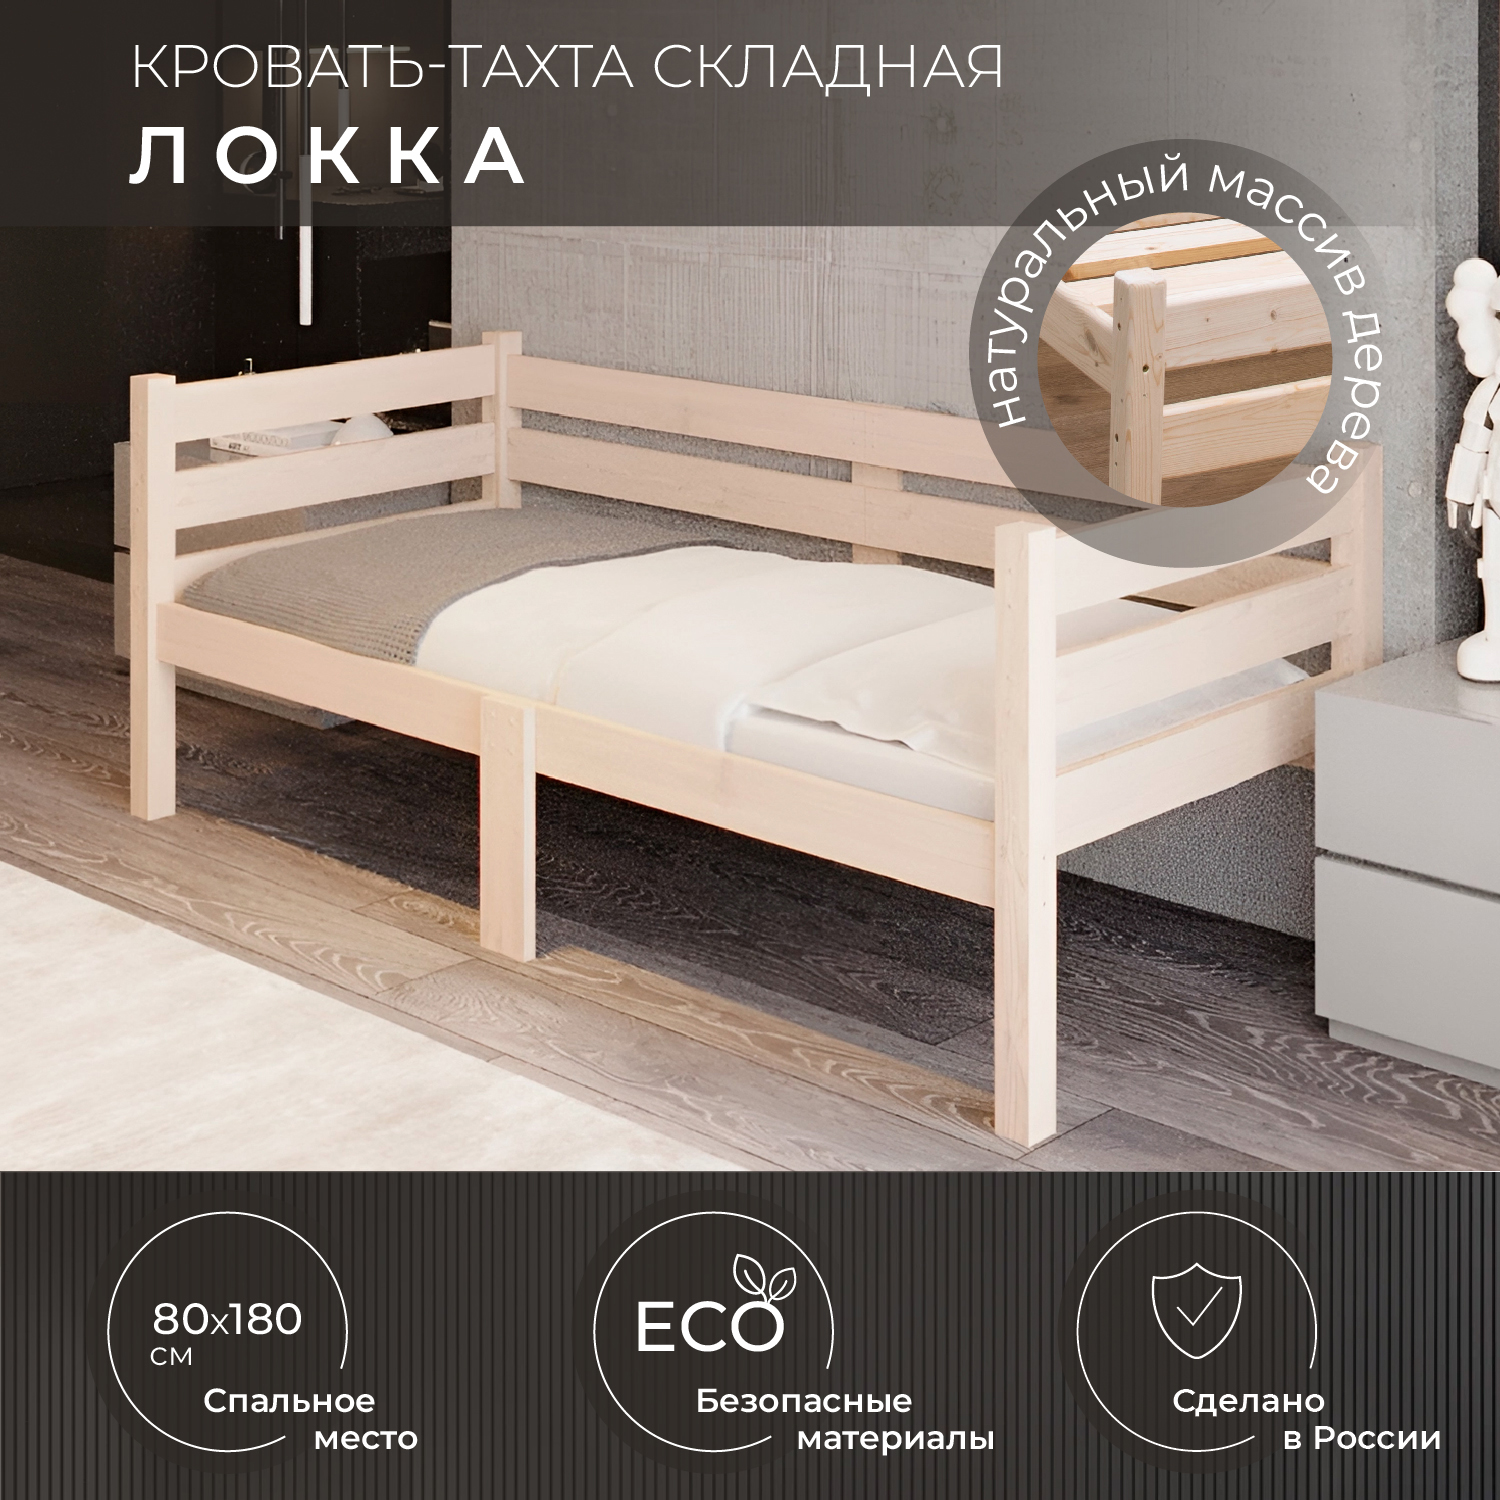 Кровать односпальная Новирон Локка 80х180 см складная бежевый